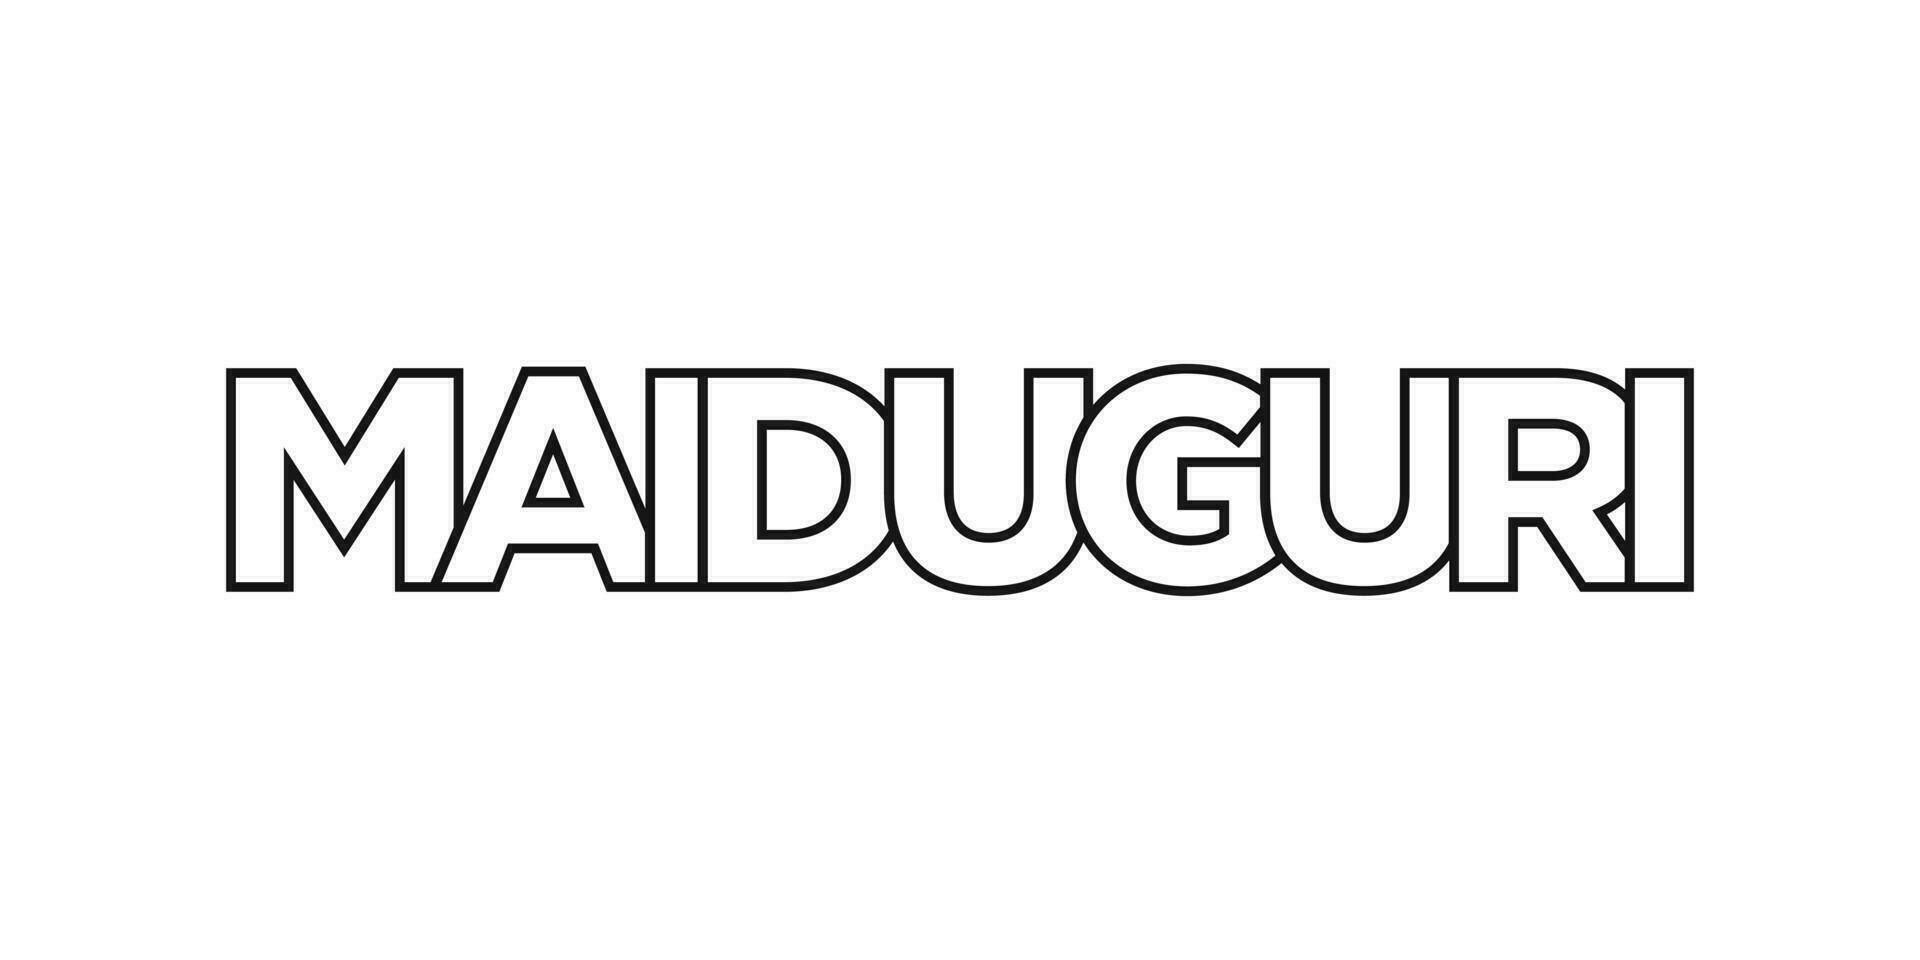 Maiduguri dans le Nigeria emblème. le conception Caractéristiques une géométrique style, vecteur illustration avec audacieux typographie dans une moderne Police de caractère. le graphique slogan caractères.